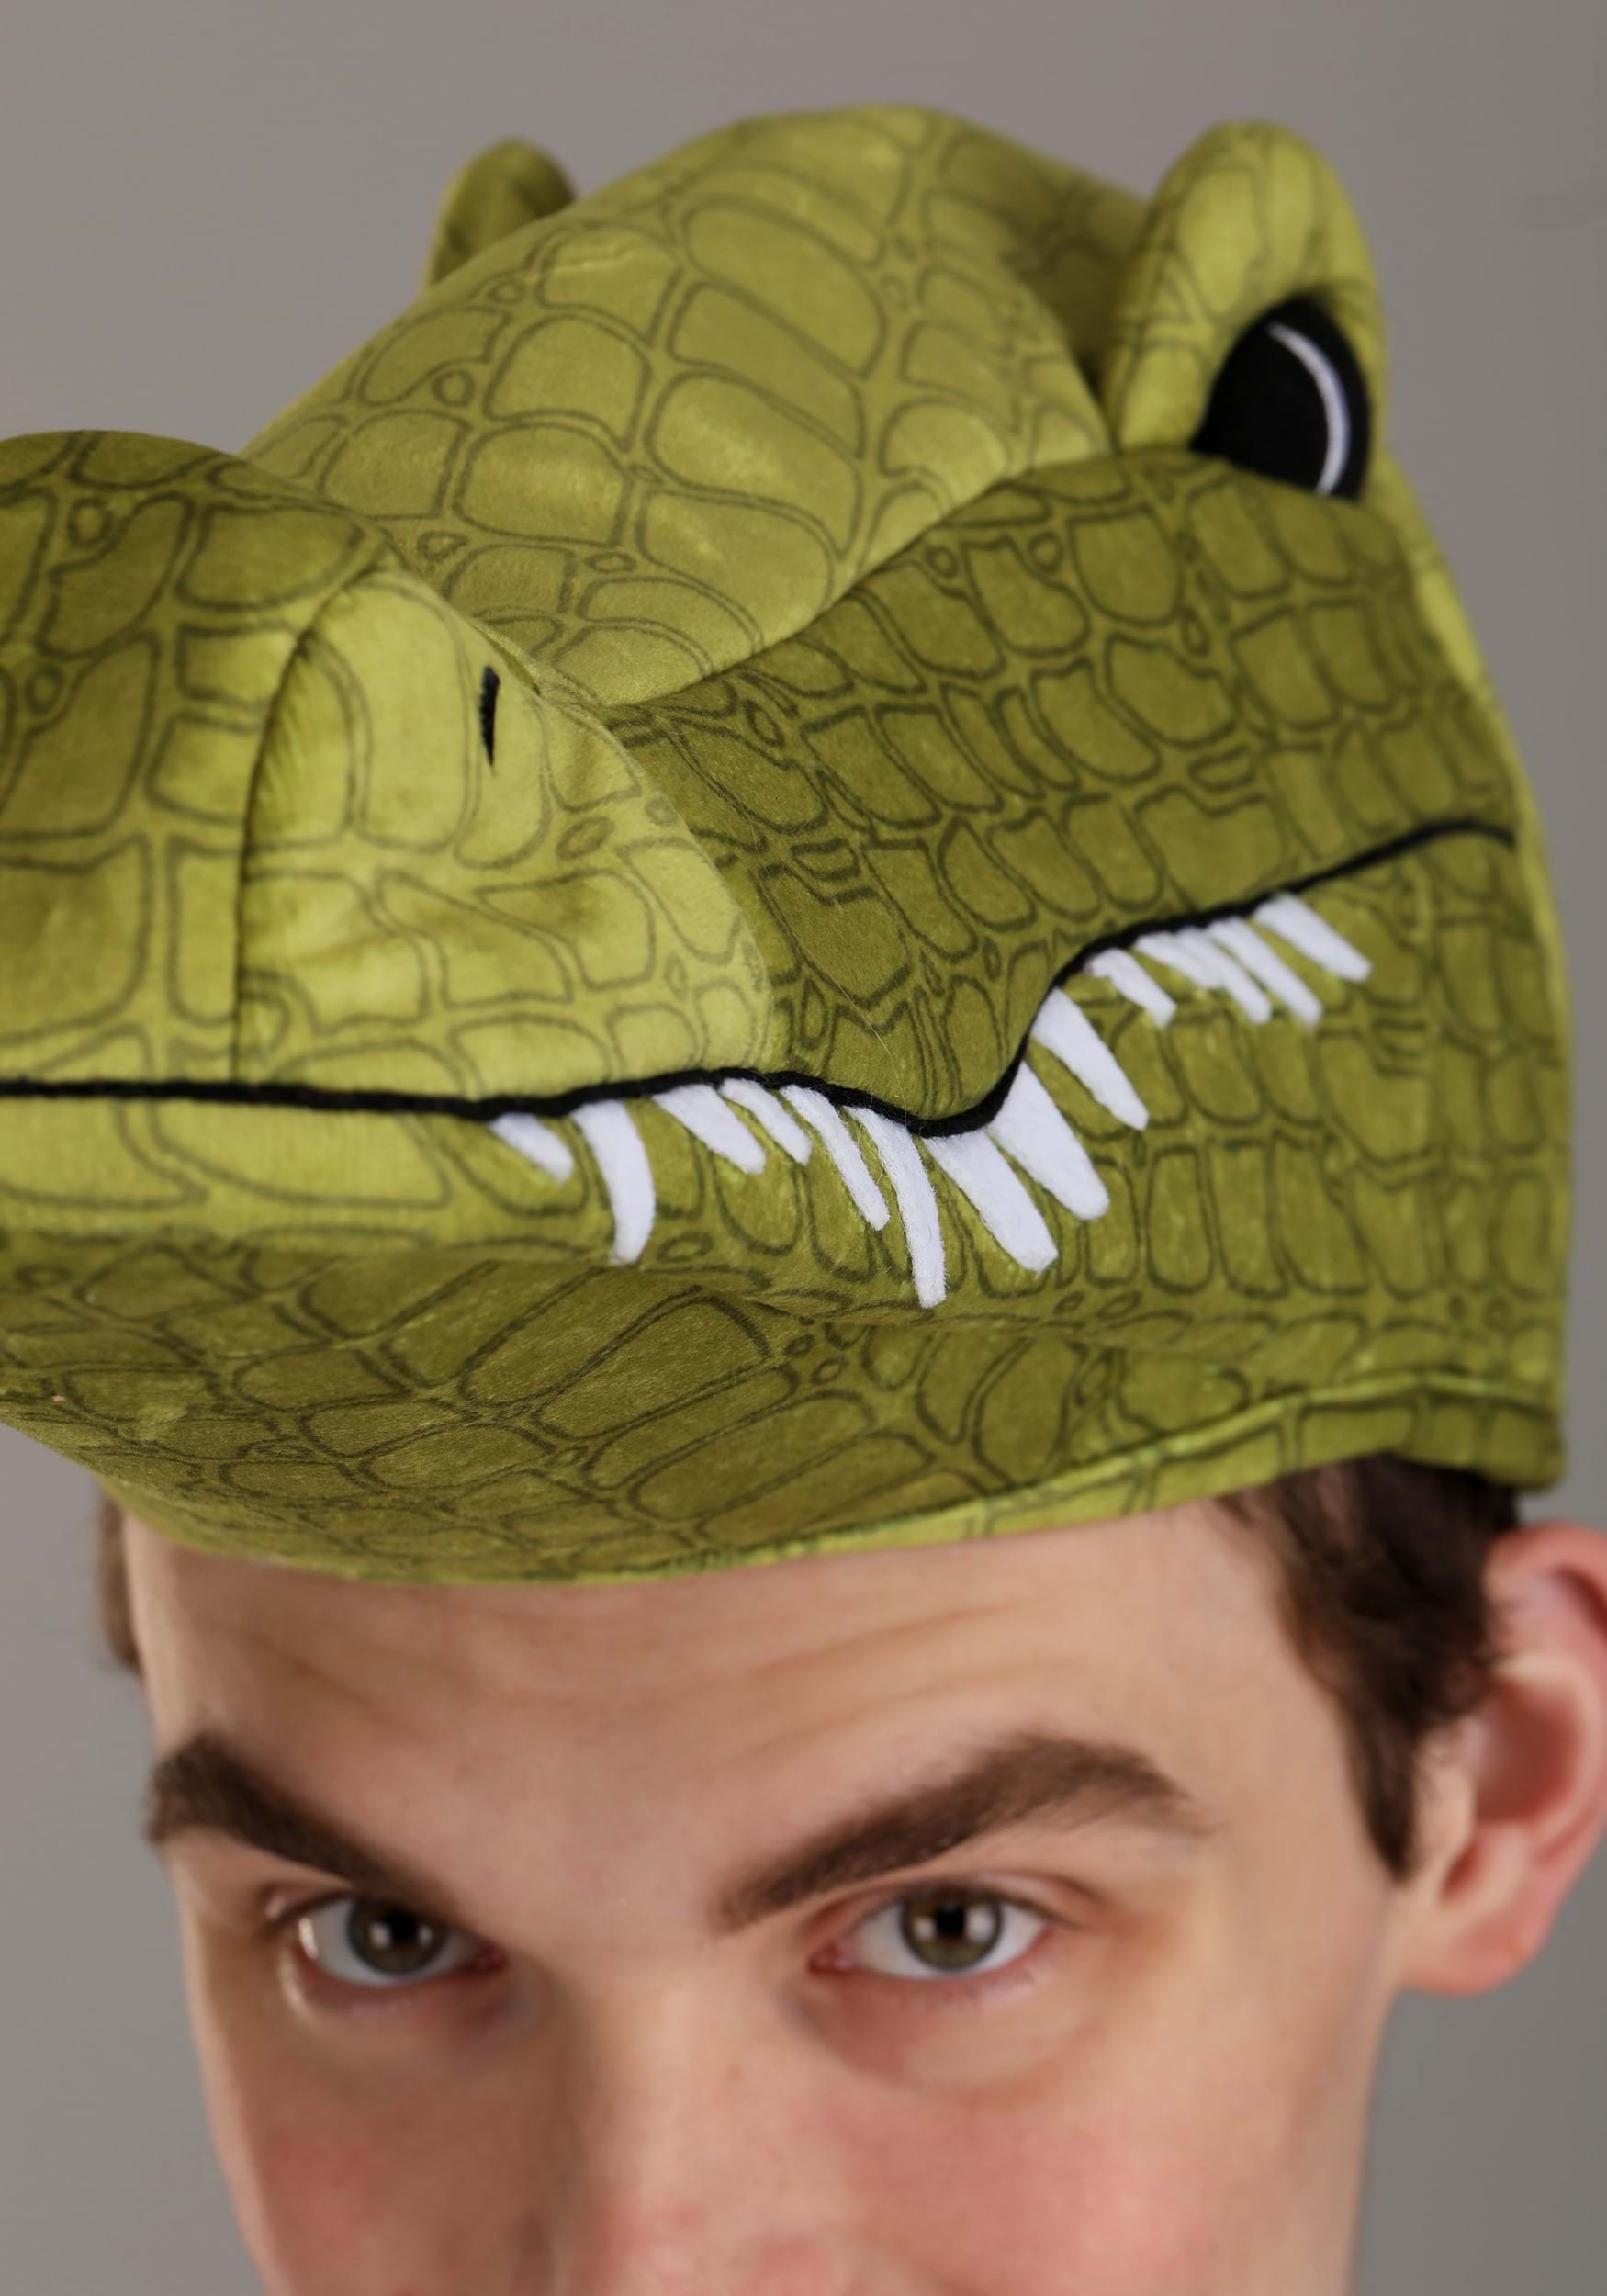 Plush Alligator Costume Hat